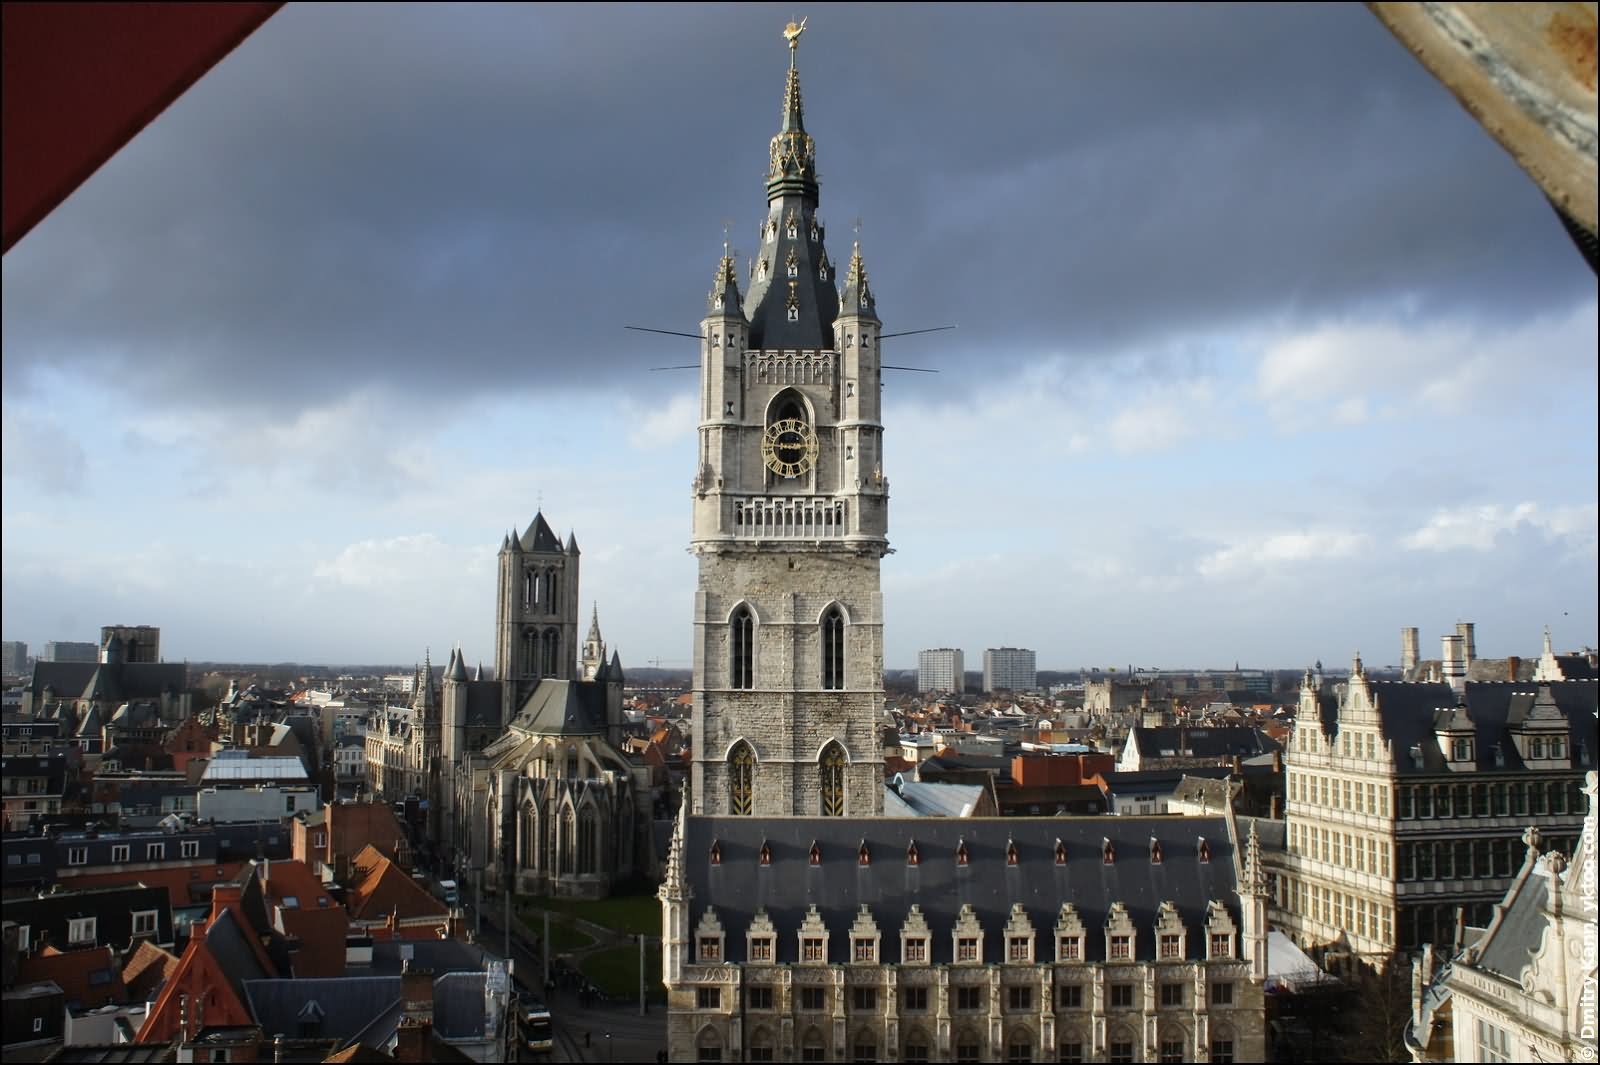 Beautiful Image of The Belfry of Ghent In Belgium